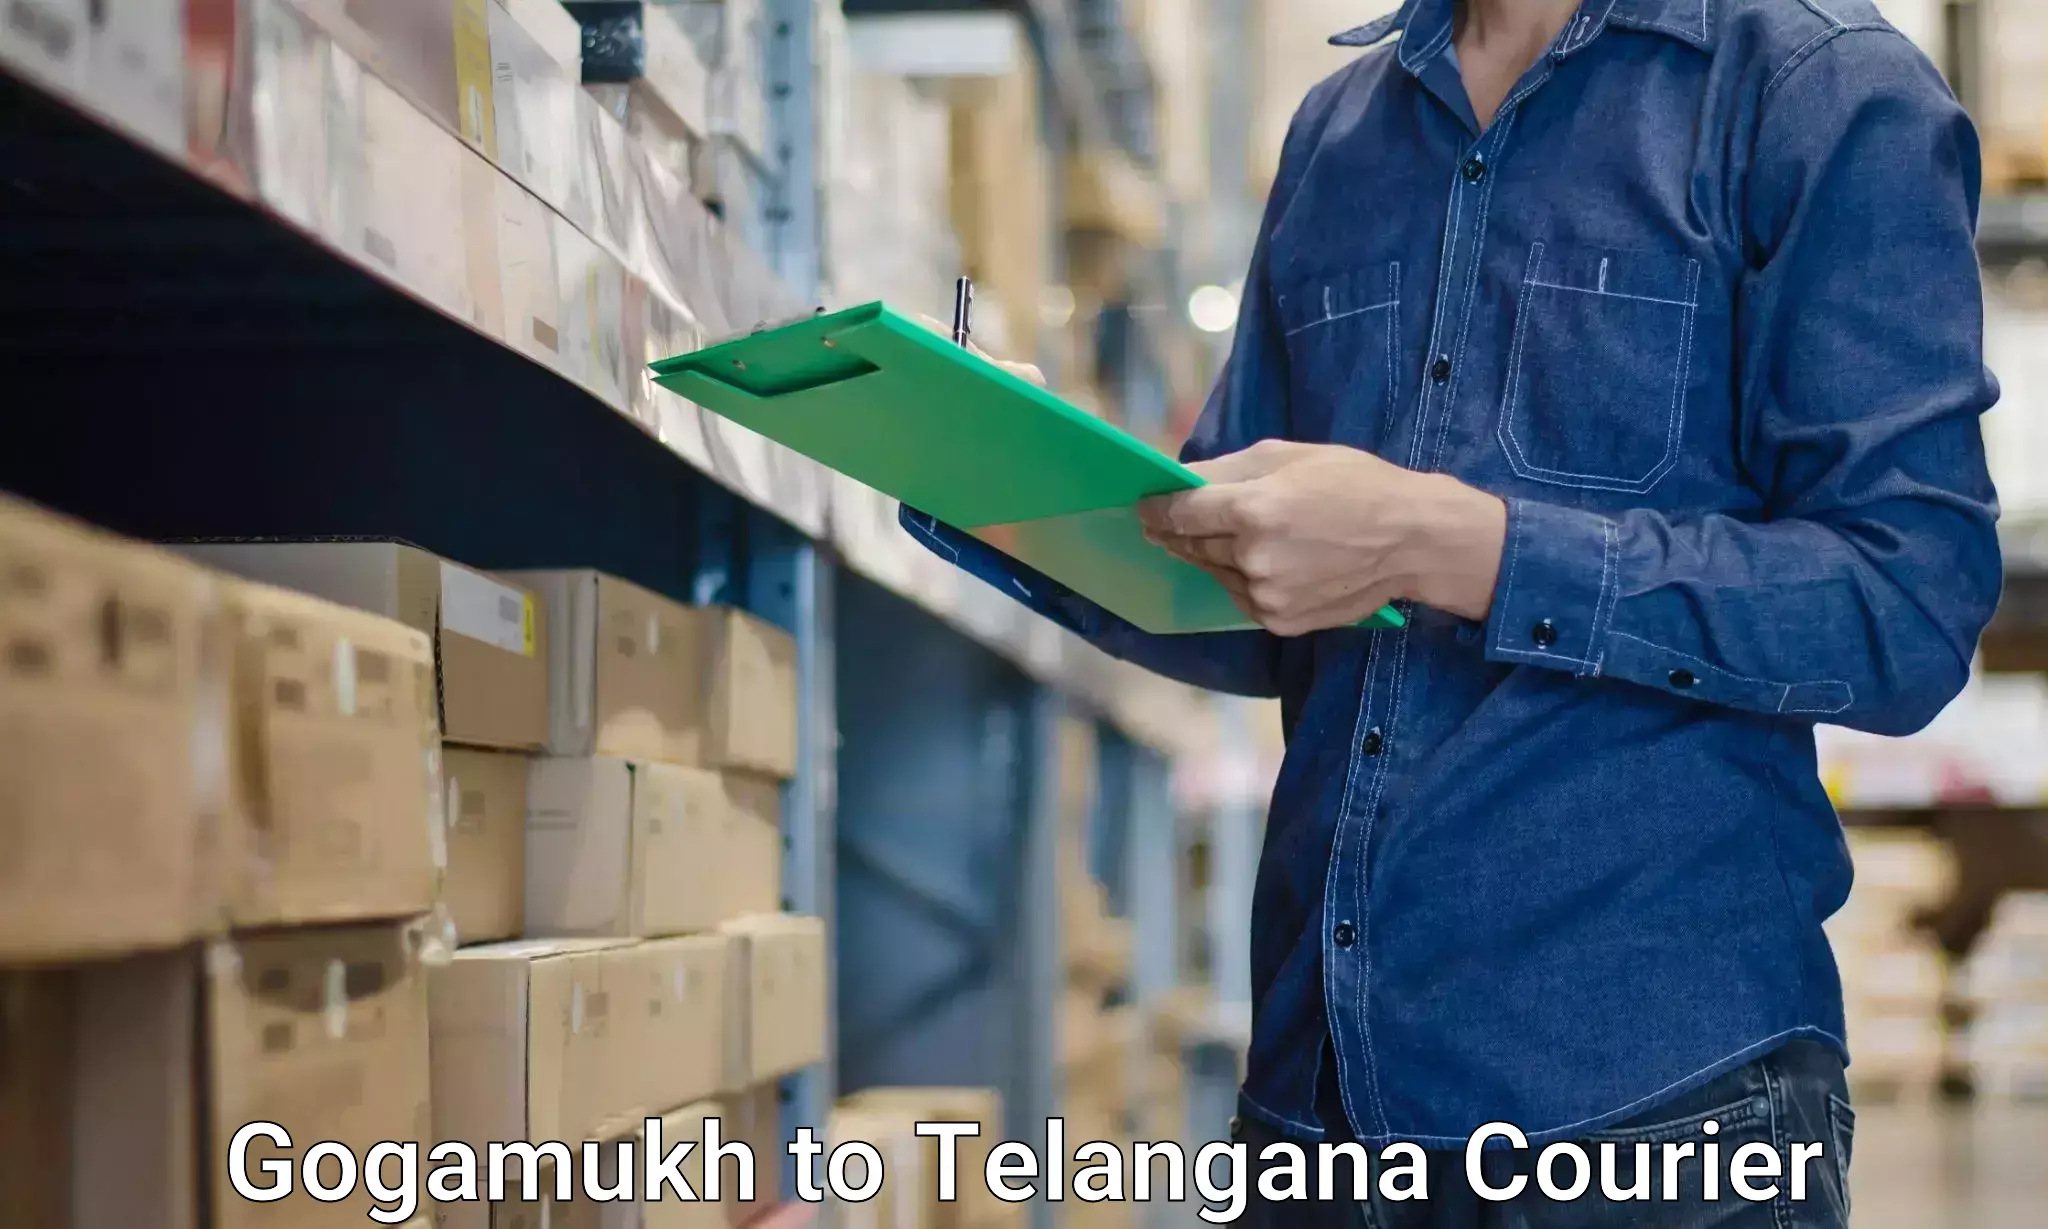 Household logistics services Gogamukh to Telangana